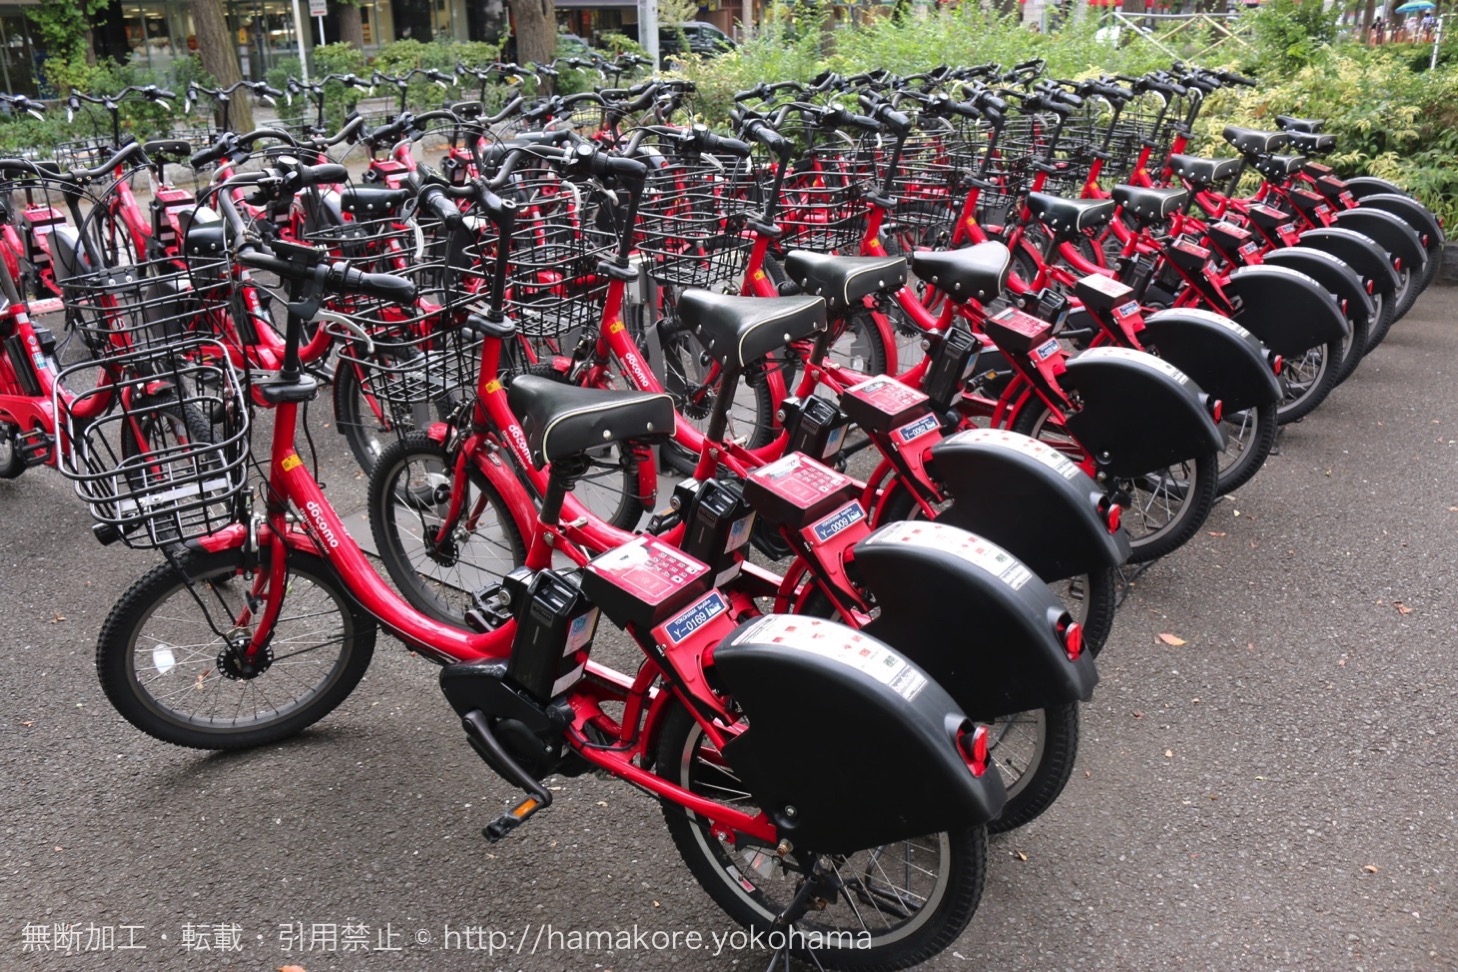 横浜みなとみらい観光にオススメのレンタル自転車「ベイバイク」は1日乗り放題で返却場所自由